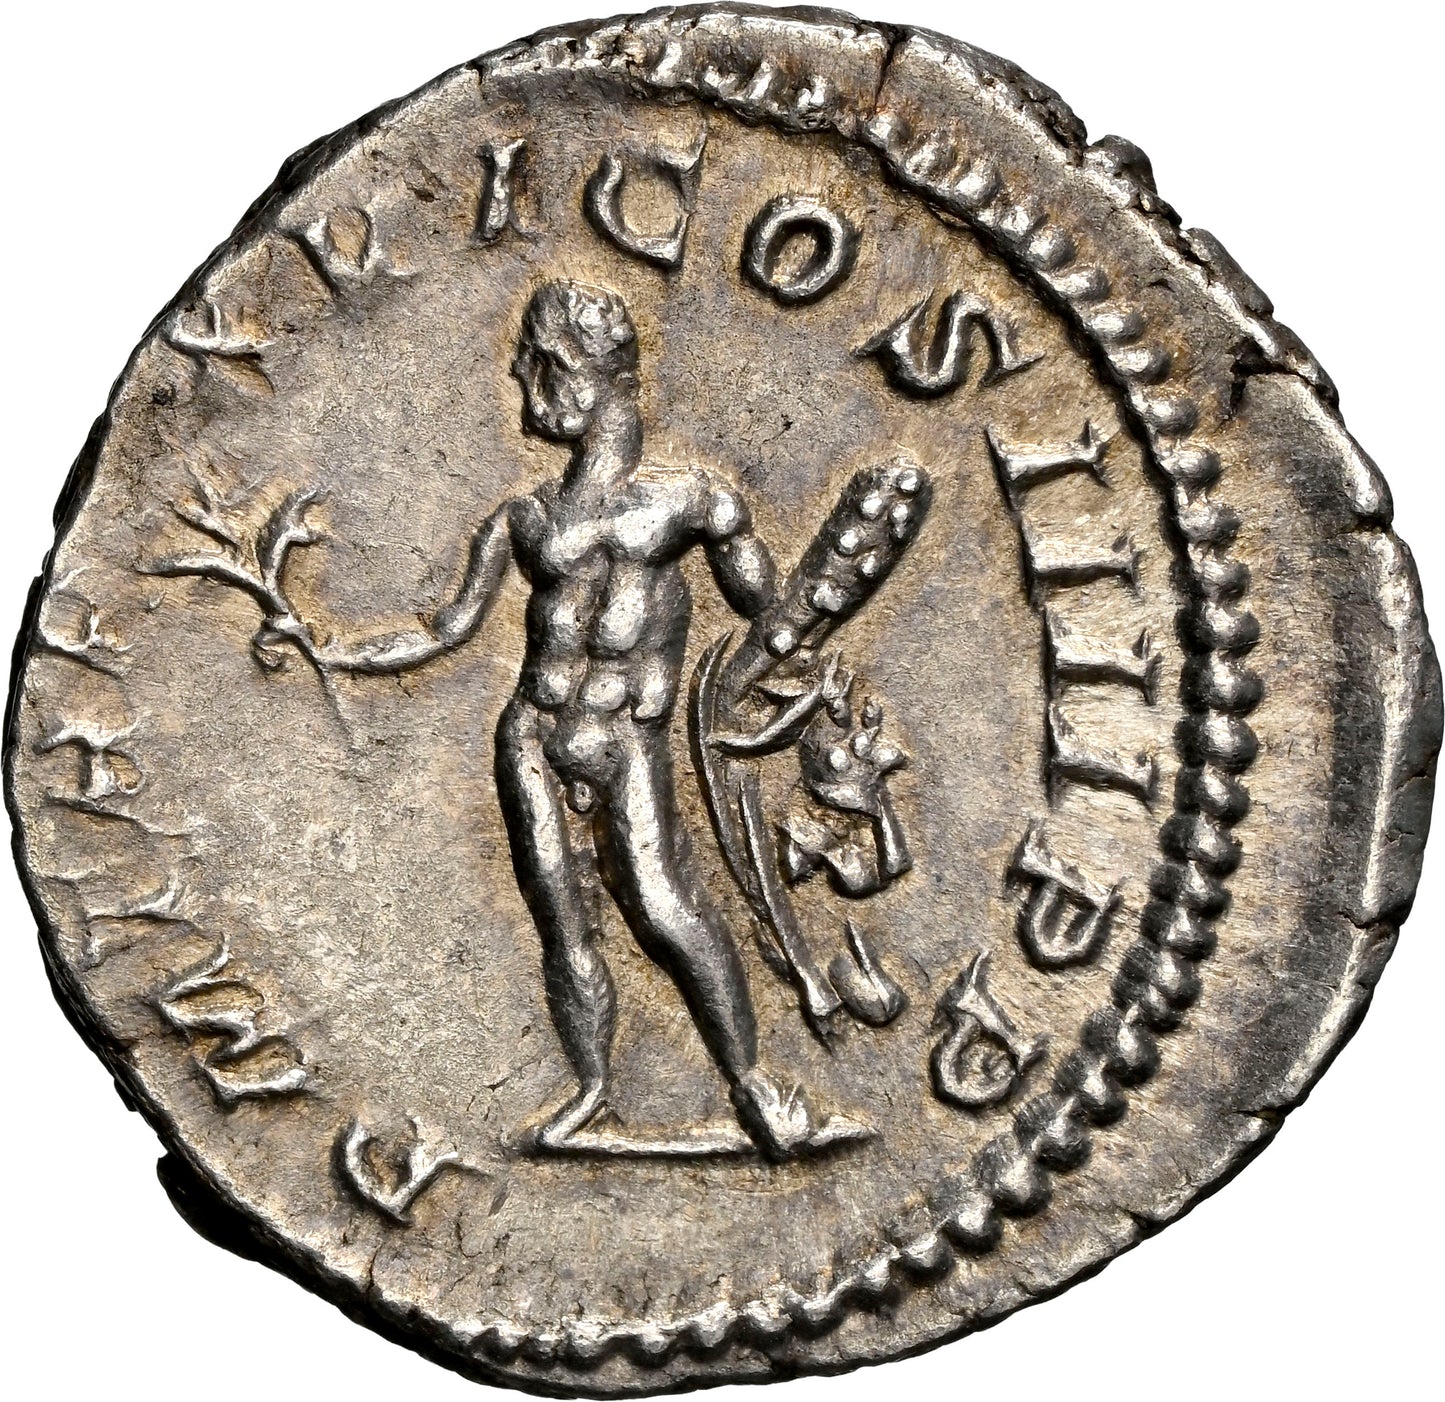 Roman Empire - Caracalla - Silver Denarius - NGC Ch XF - RIC:206b